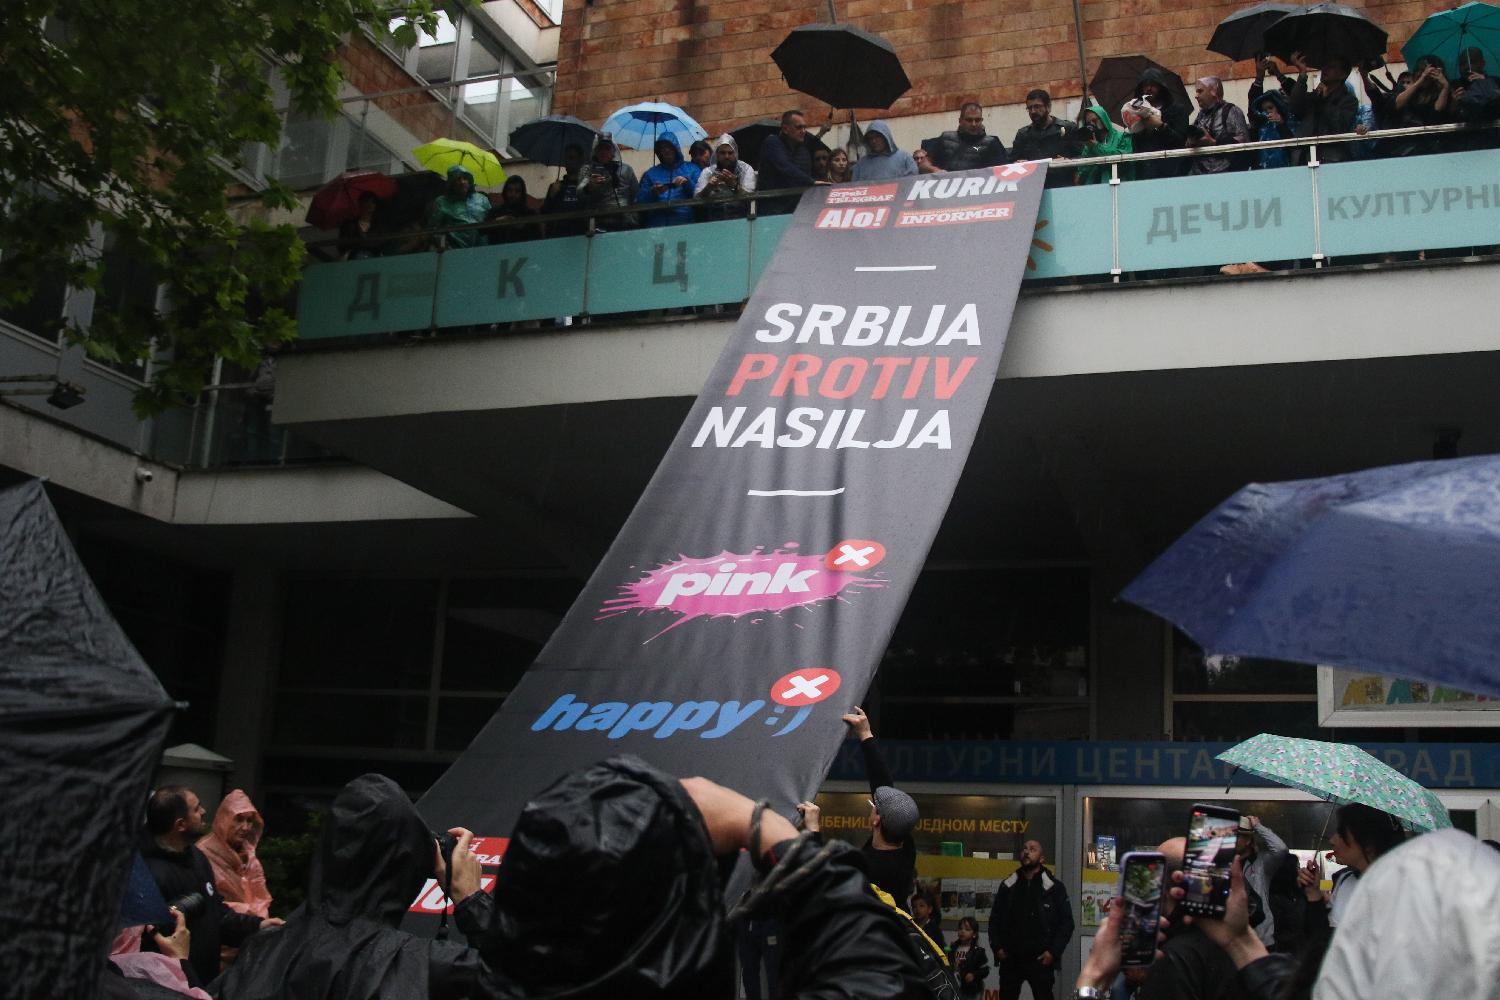 'Prsten' oko RTS-a, kiša, i uključenje u Dnevnik: Slike koje su obeležile protest "Srbija protiv nasilja" (FOTO) 19